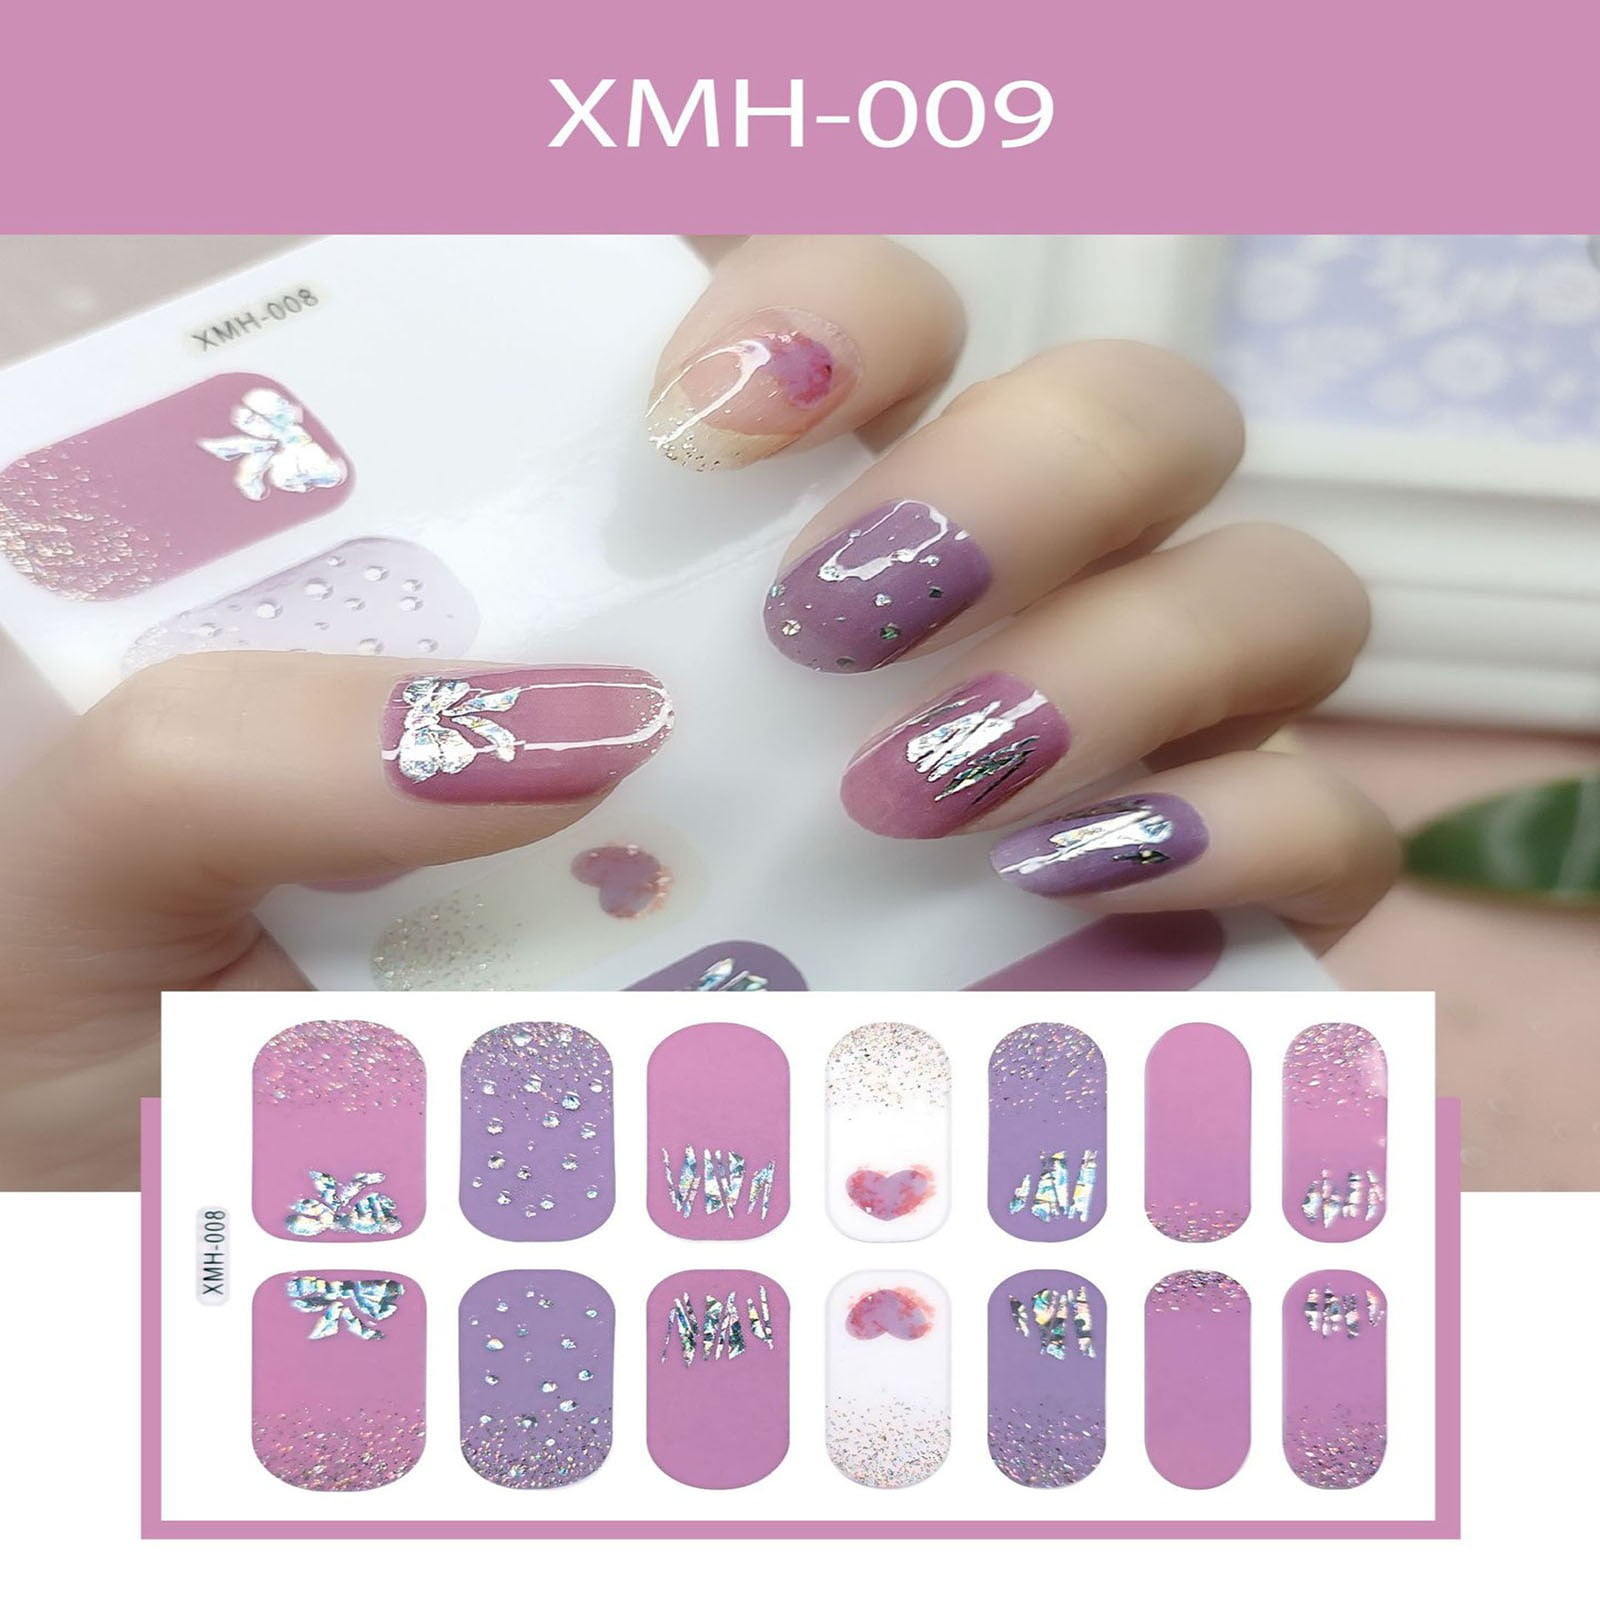 Attractive nail polish color with brand name | nail polish color collection  - YouTube | Gel nails, Dark skin nail polish, Cute nails